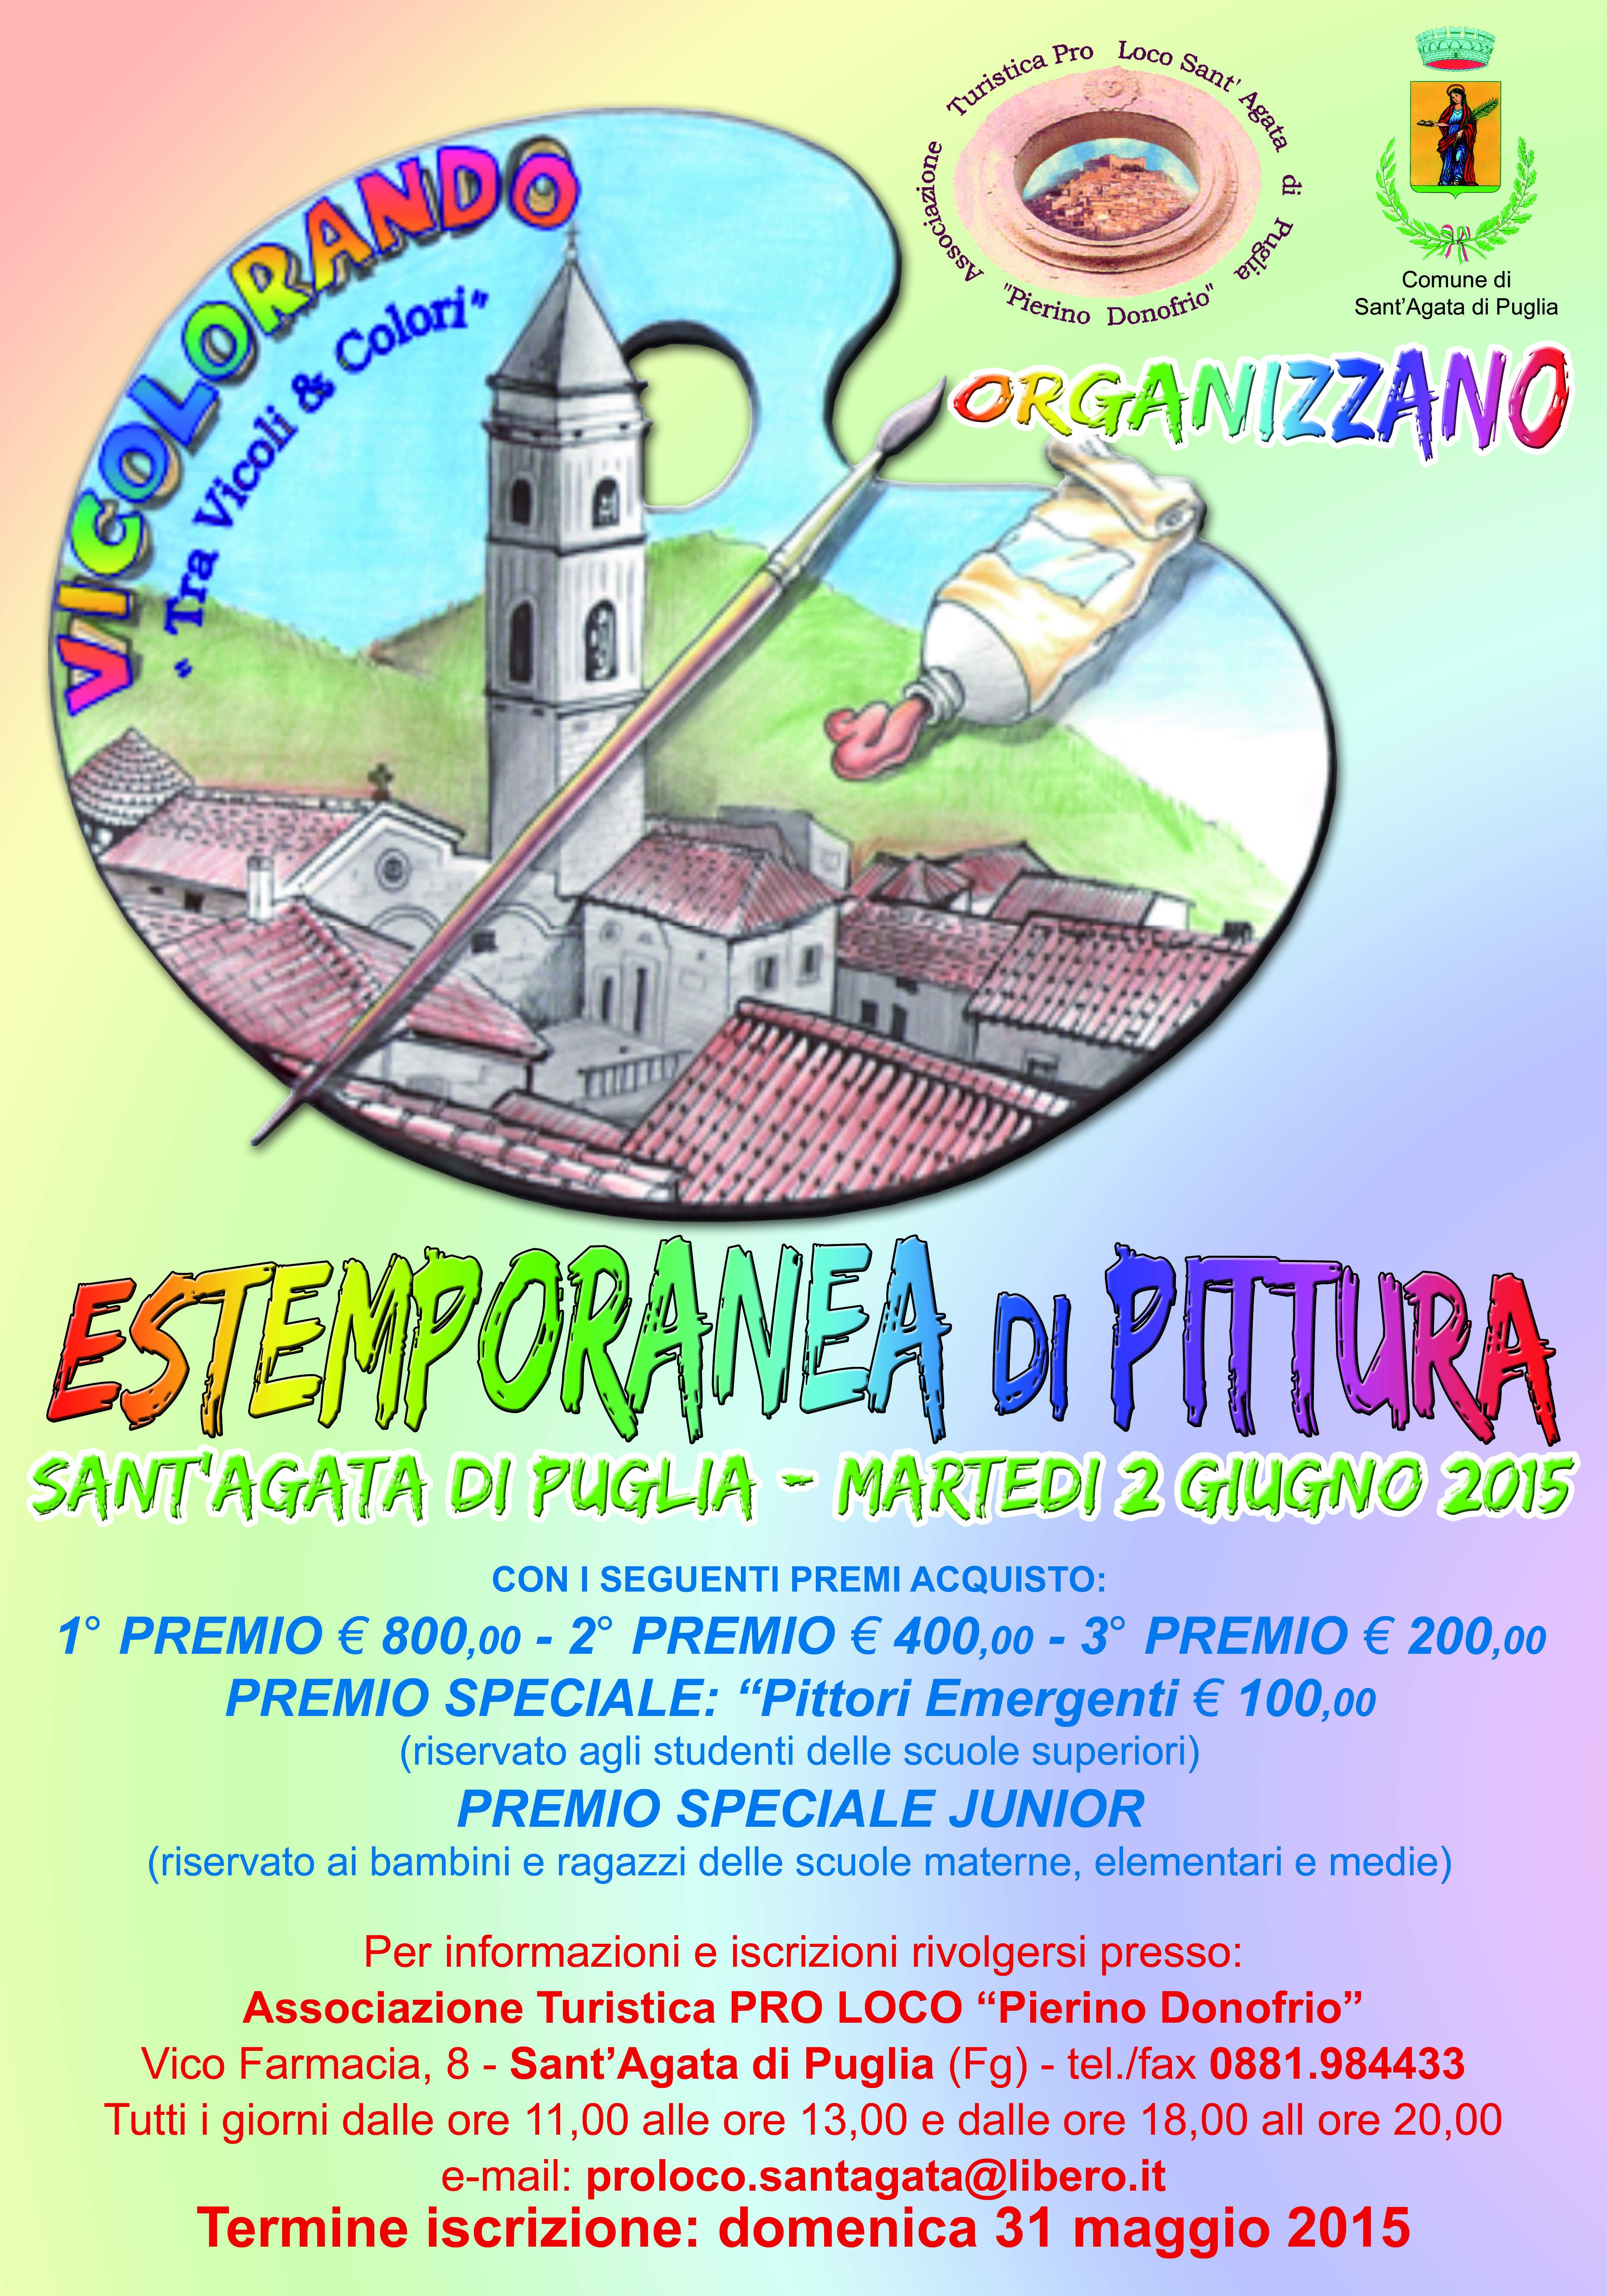 Sant’Agata di Puglia, “Vicolorando” – estemporanea di pittura – 2 Giugno 2015